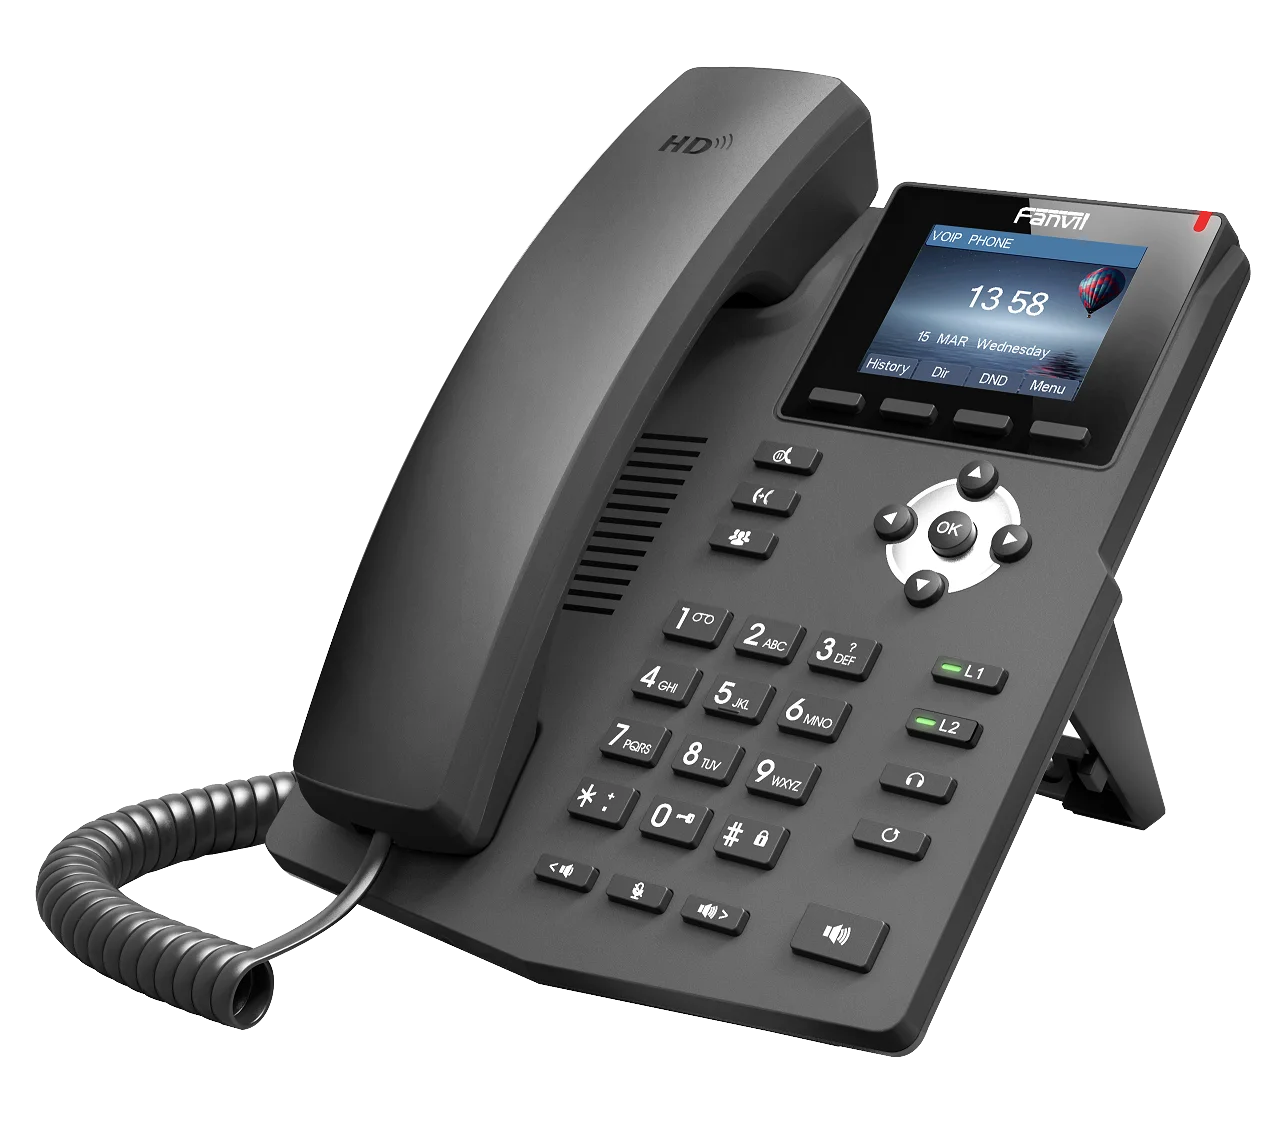 Fanvil X3S IP телефон SOHOIP телефон промышленности телефон 2 SIP линии HD голосовой POE с поддержкой наушников Smart Deskphone